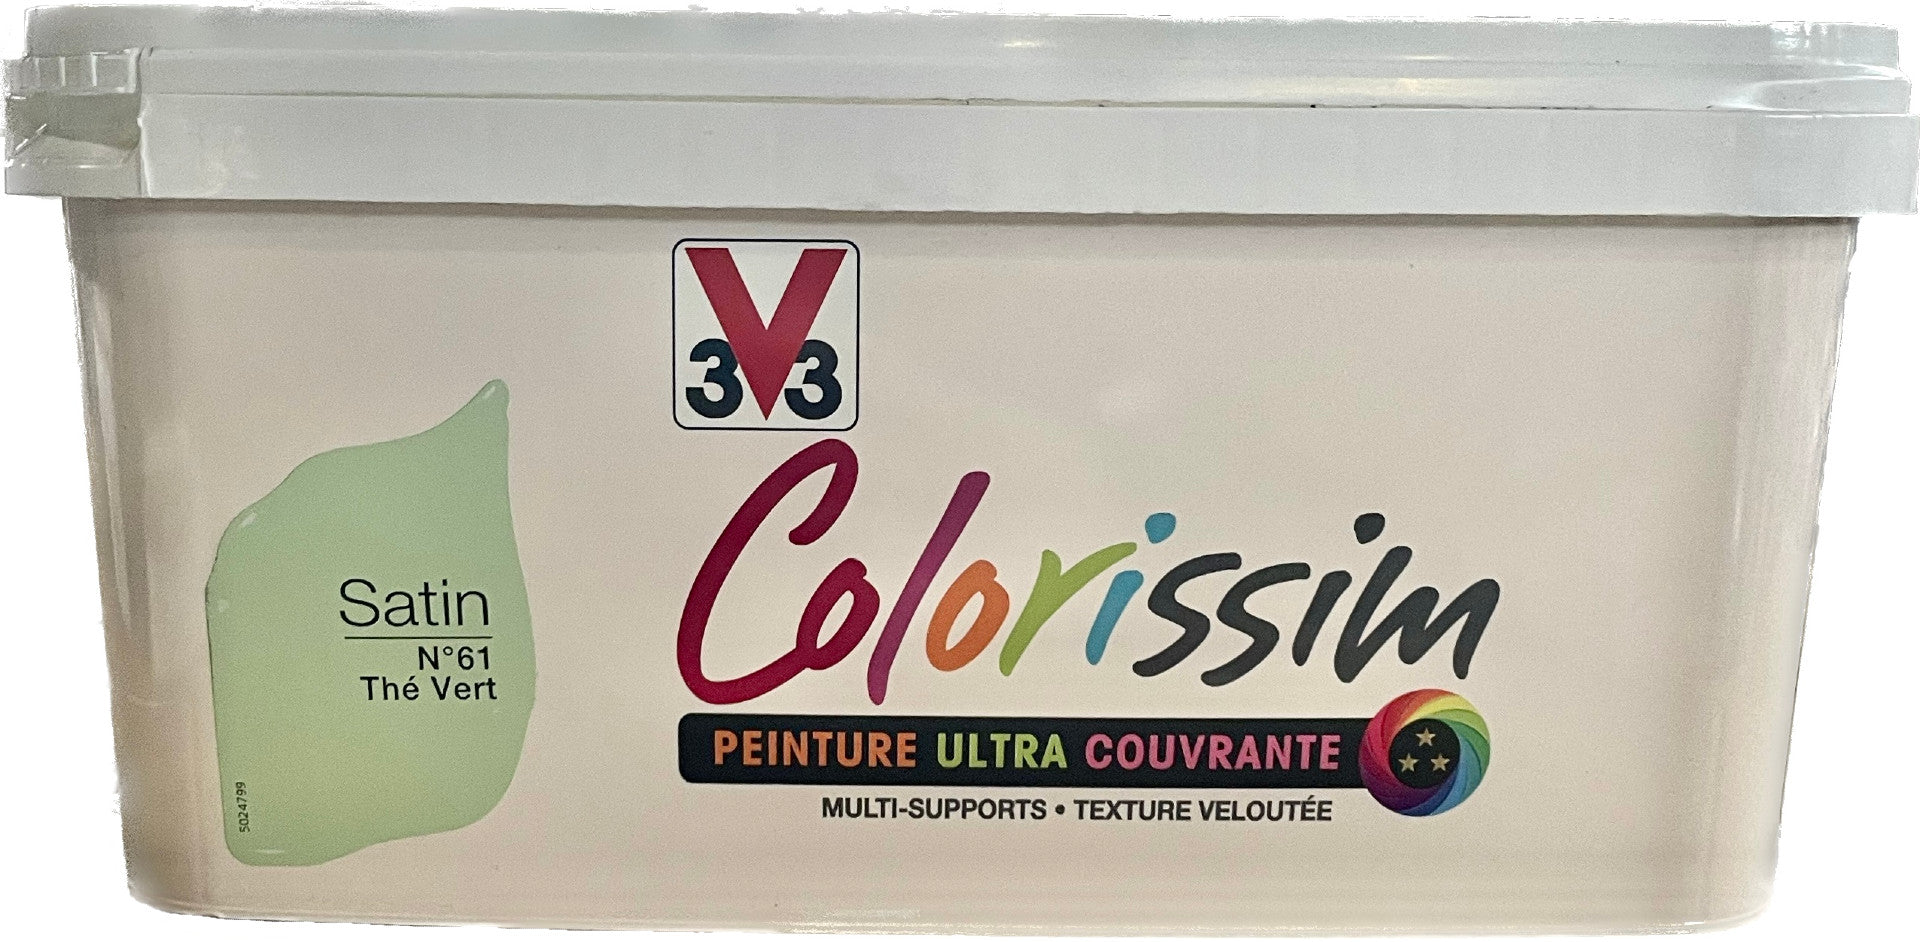 Peinture Colorissim Mat V33 Blanc Grisé, 0,5 L - Chrétien Matériaux